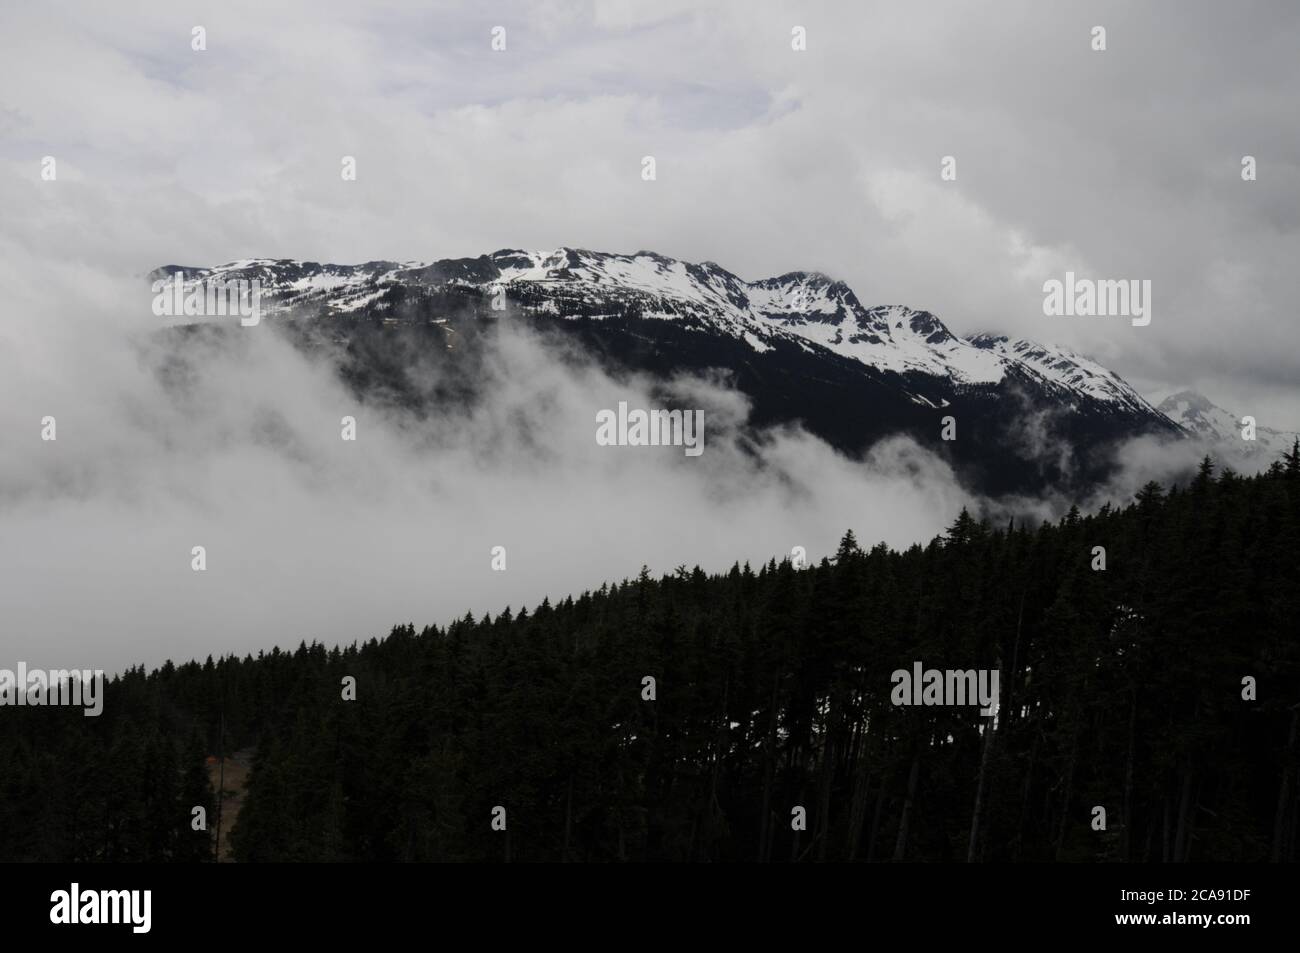 Il monte Blackcomb, innevato, si avvolse nella nebbia di metà estate sopra Whistler, una stazione sciistica della British Columbia, Canada. Foto Stock